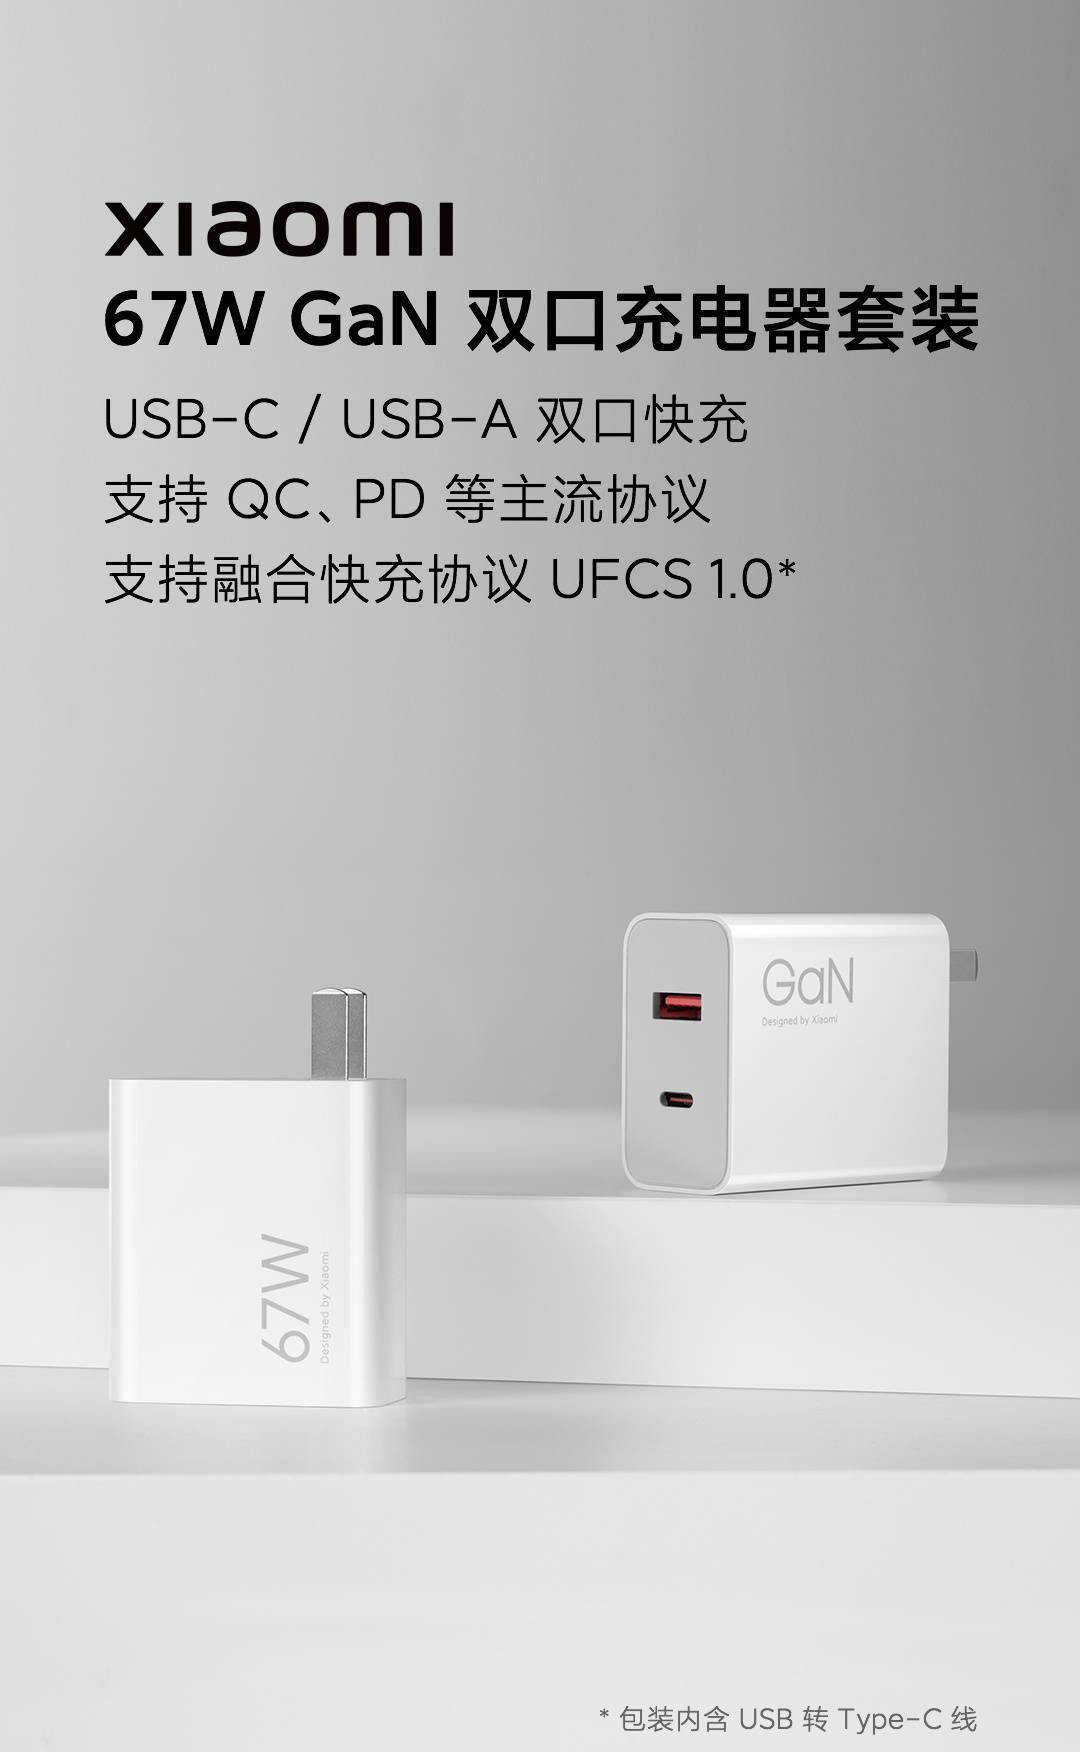 5寸华为电信手机
:小米推出新款 35/67W 充电器：支持 UFCS 融合快充协议，99/149元